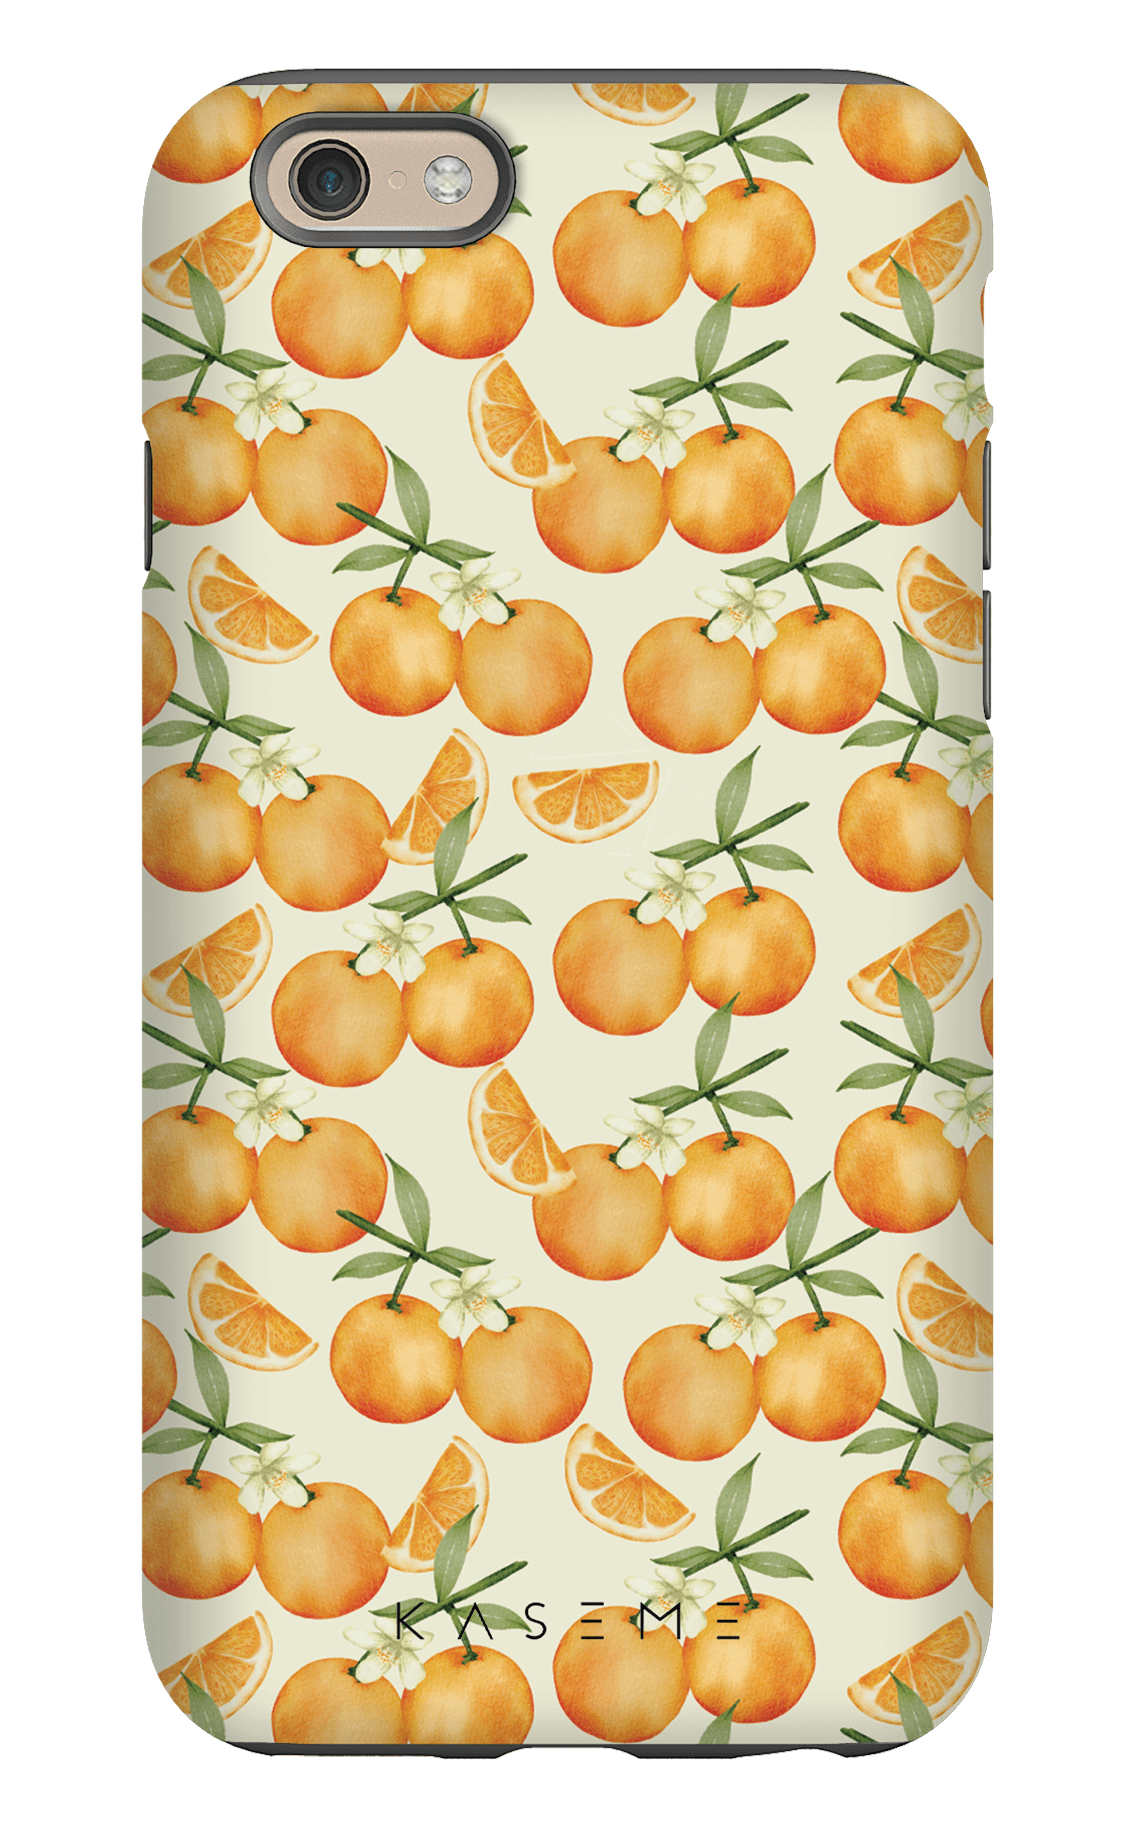 Tangerine - iPhone 6/6s